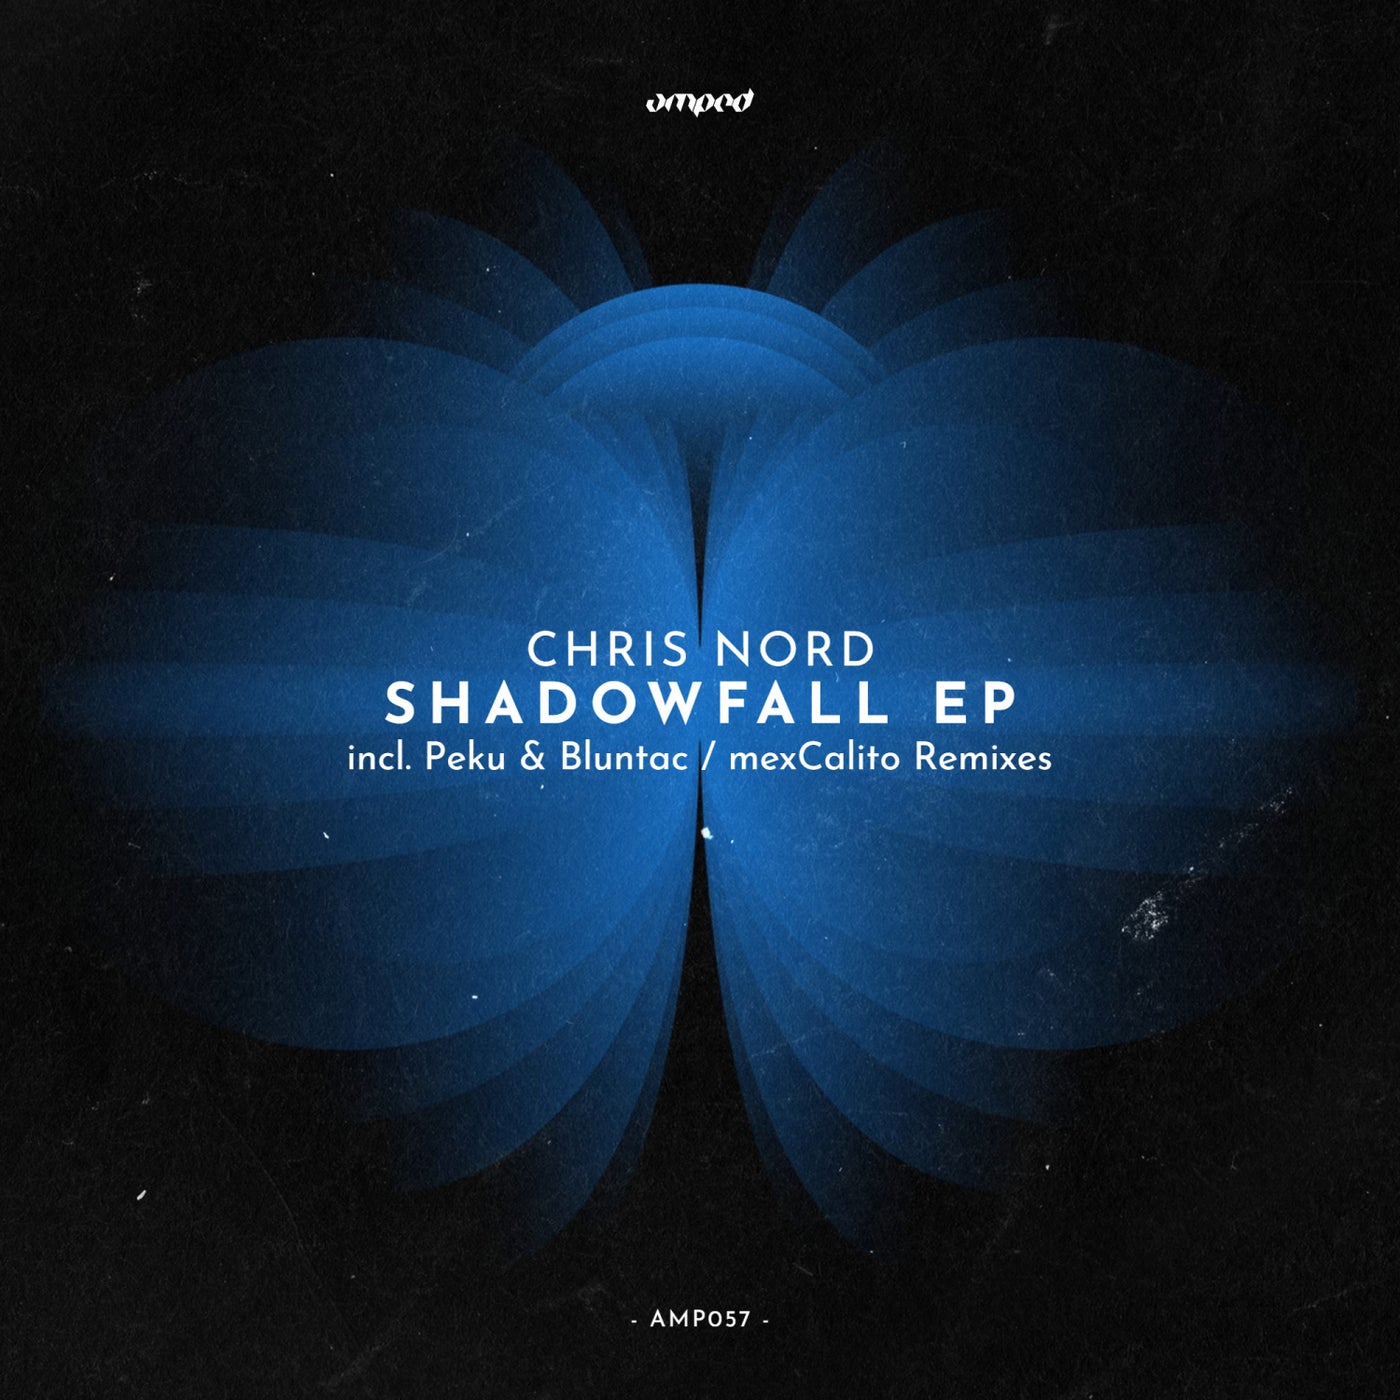 Shadowfall EP